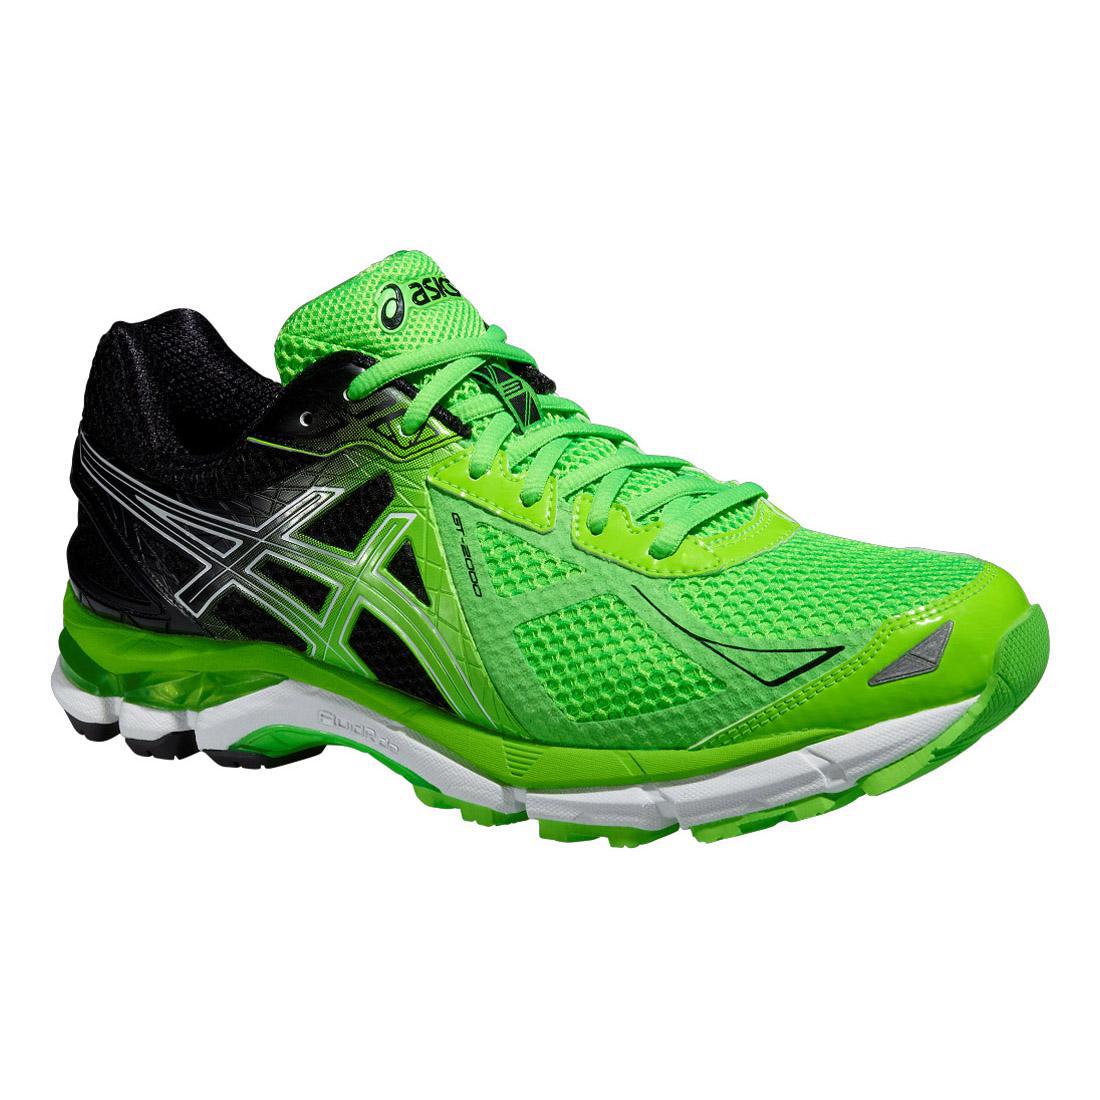 Asics Mens GT-2000 3 Running Shoes - Green/Black - Tennisnuts.com